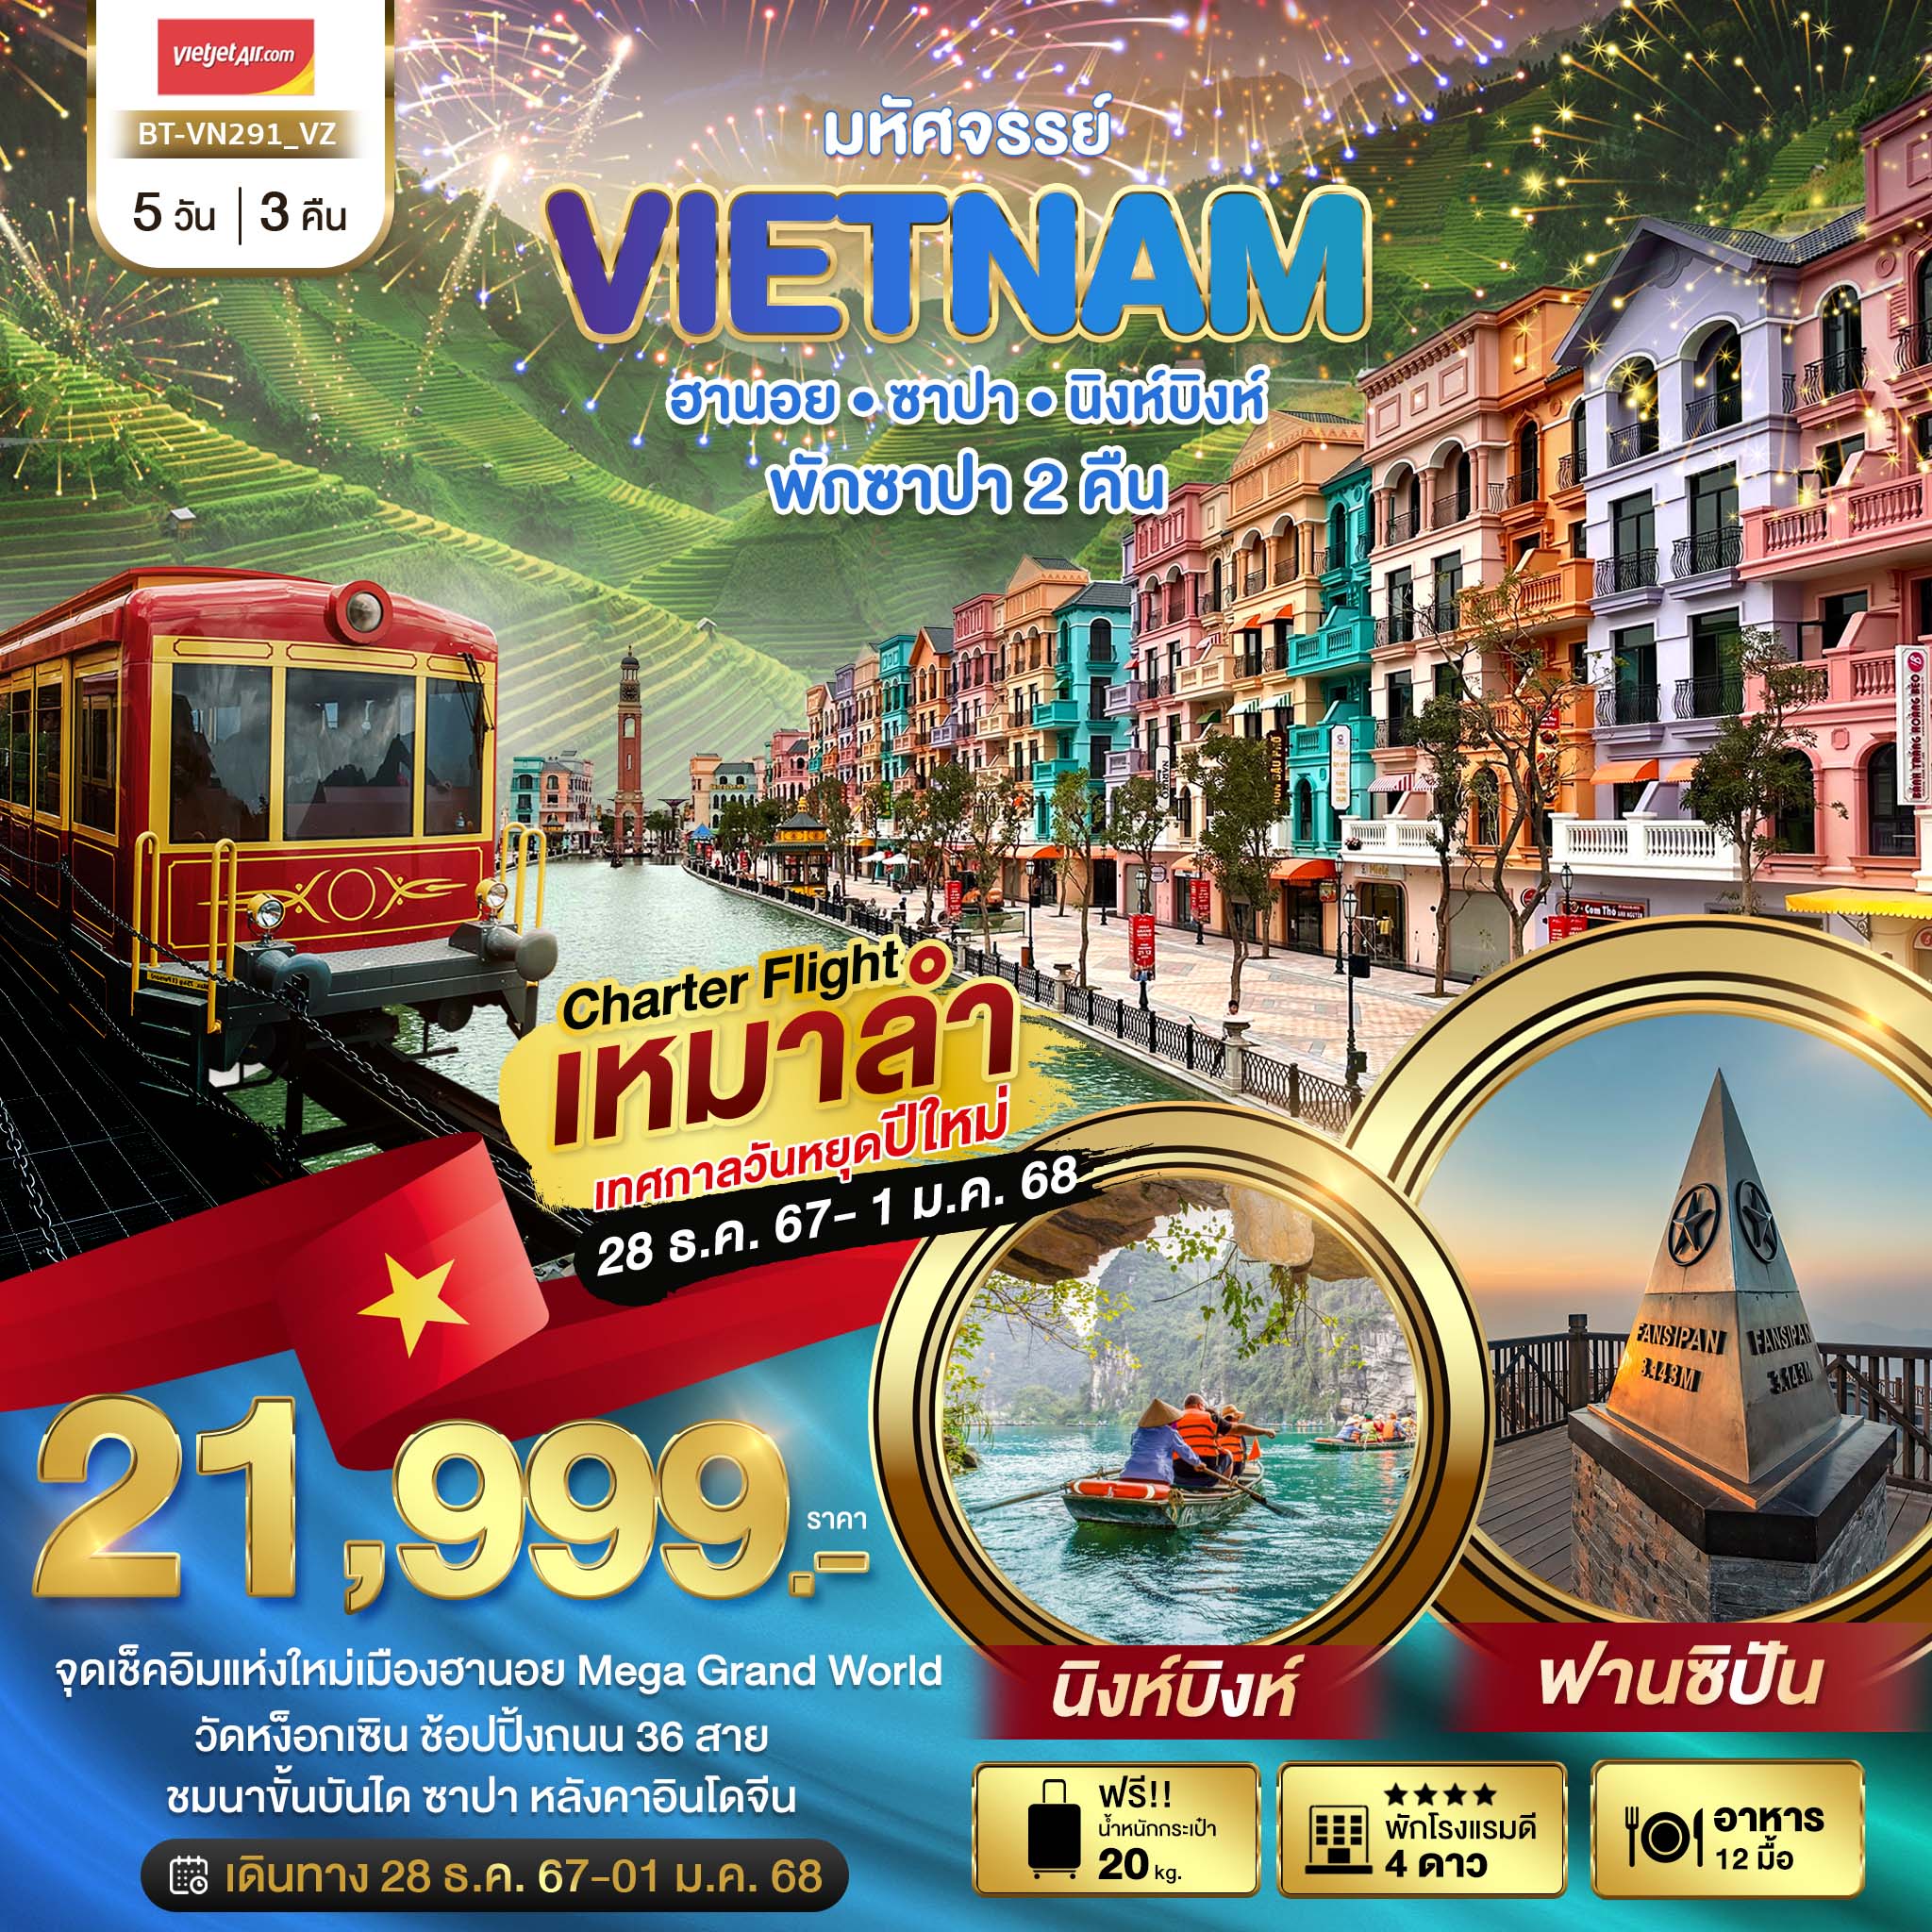 ทัวร์เวียดนาม บินเหมาลำ ฉลองเทศกาลปีใหม่ ฮานอย นิงห์บิงห์ พักซาปา 2 คืน 5วัน 3คืน (VZ)